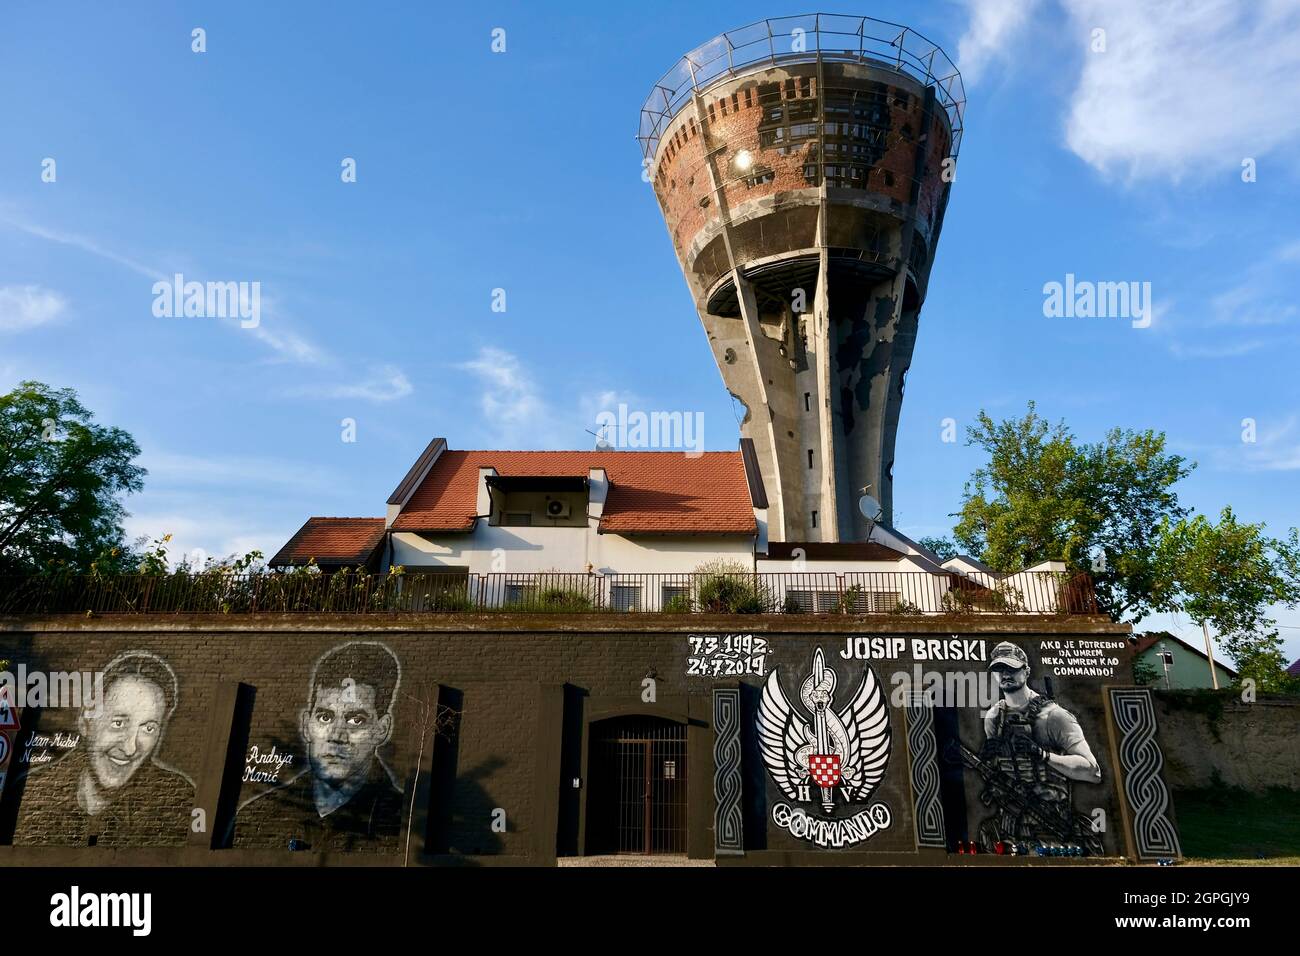 Croazia, Slavonia, Vukovar, la torre dell'acqua, simbolo della resistenza della città contro il nemico durante l'assedio di Vukovar nel 1991, ha colpito più di 600 volte in 3 mesi, ora un memoriale, affresco del soldato francese Jean-Michel Nicolier, volontario, Andrija Maric e Josip Briski, è morto in Afghanistan nel 2019 Foto Stock